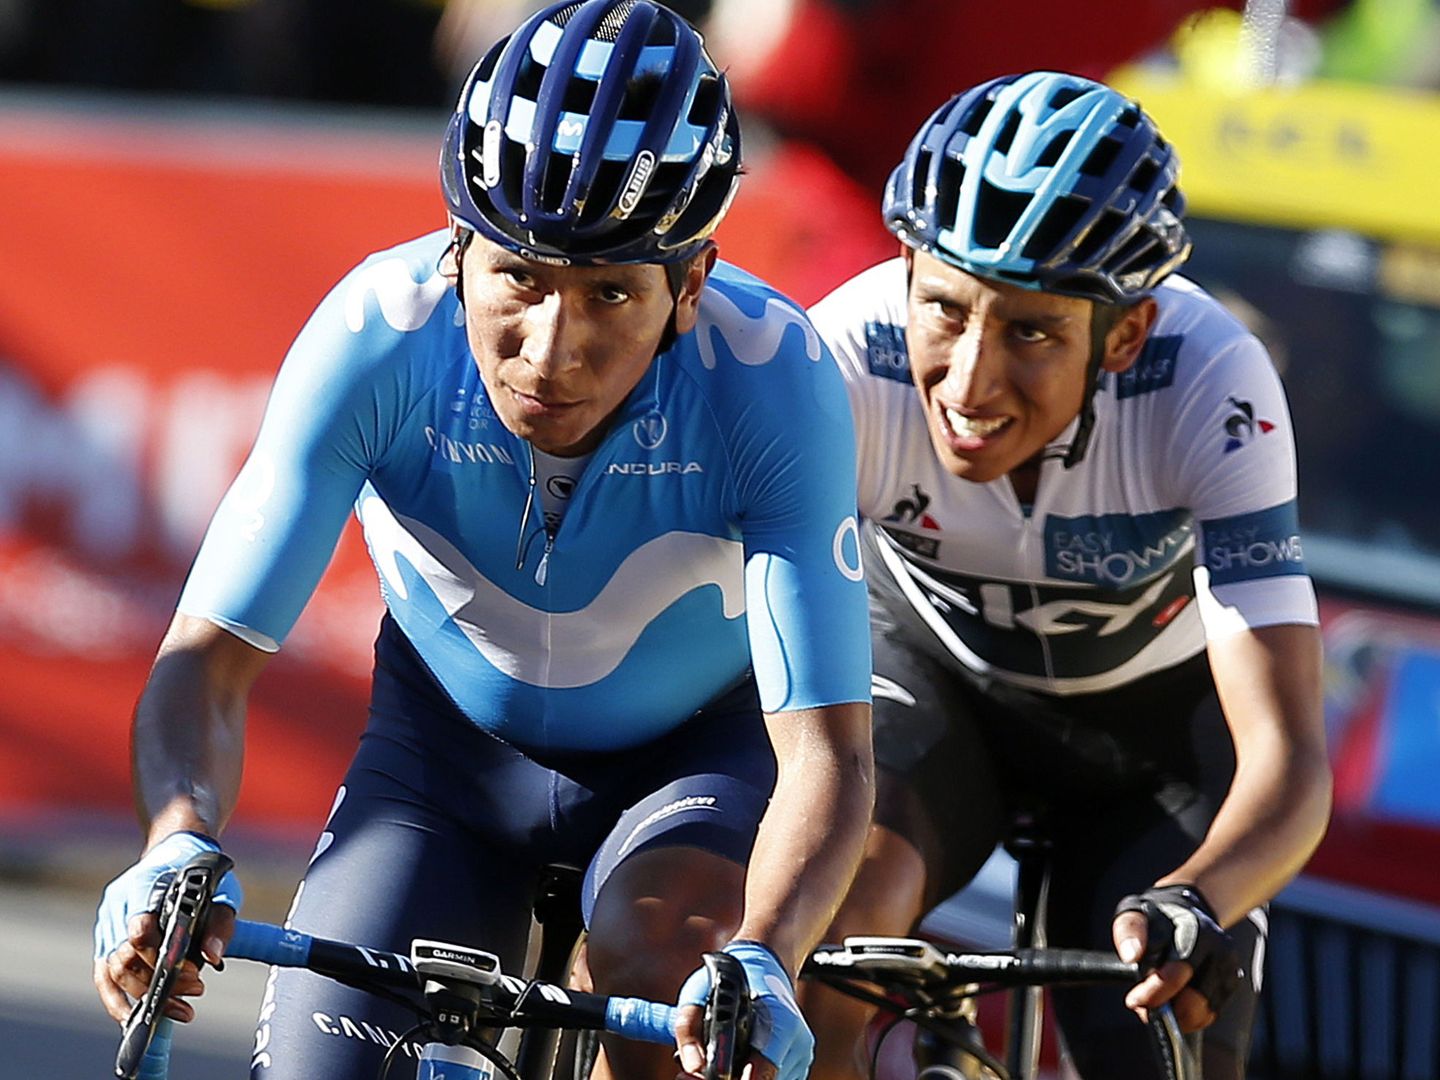 Dos máximos exponentes del ciclismo colombiano actual, Nairo Quintana (izquierda) y Egan Bernal, durante la París-Niza de 2019. (EFE)